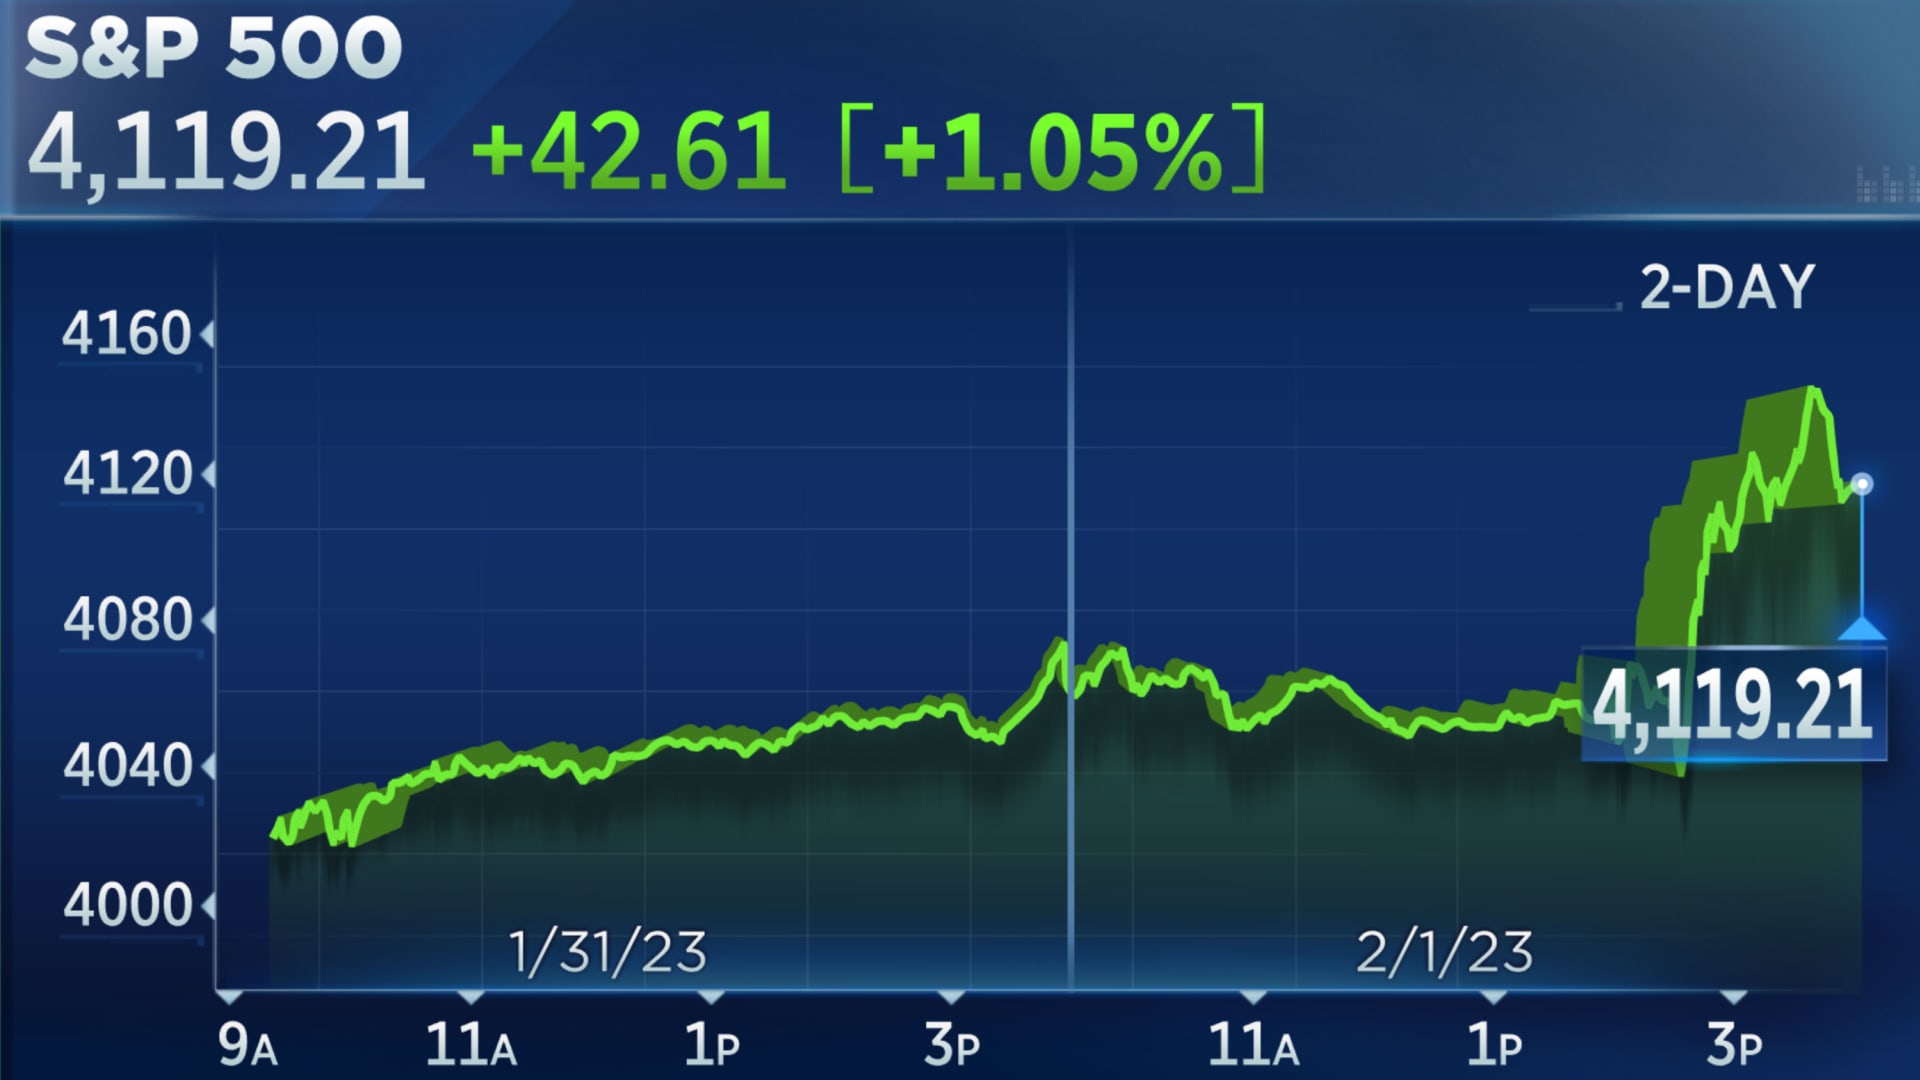 أغلق مؤشر S&P 500 على ارتفاع يوم الأربعاء ، ارتفع مؤشر ناسداك بنسبة 2٪ حيث يتطلع المستثمرون إلى ما بعد رفع سعر الفائدة الفيدرالية